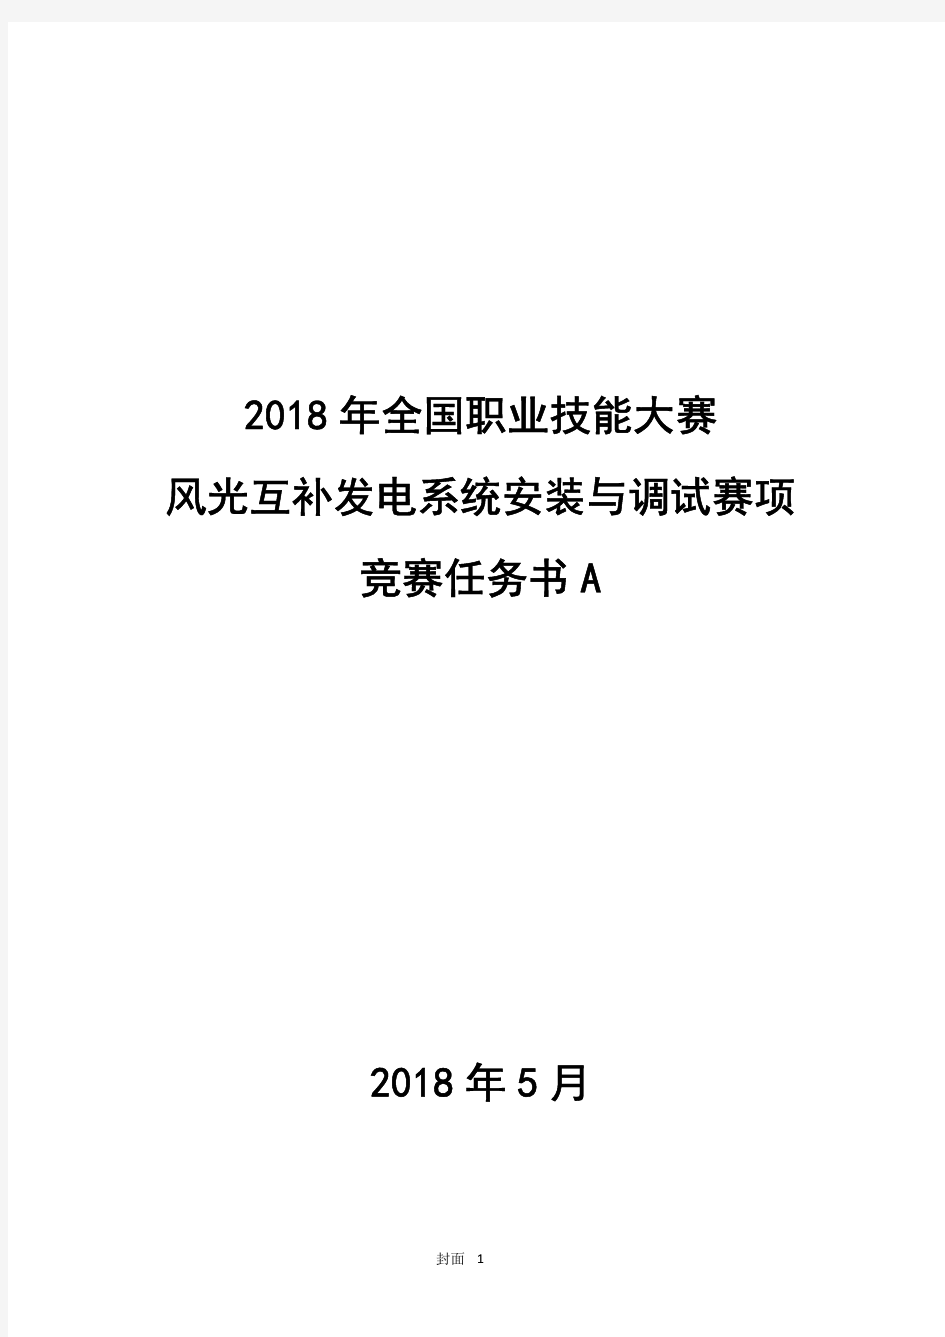 2018 高职 风光互补发电系统 任务书A(正式赛卷)